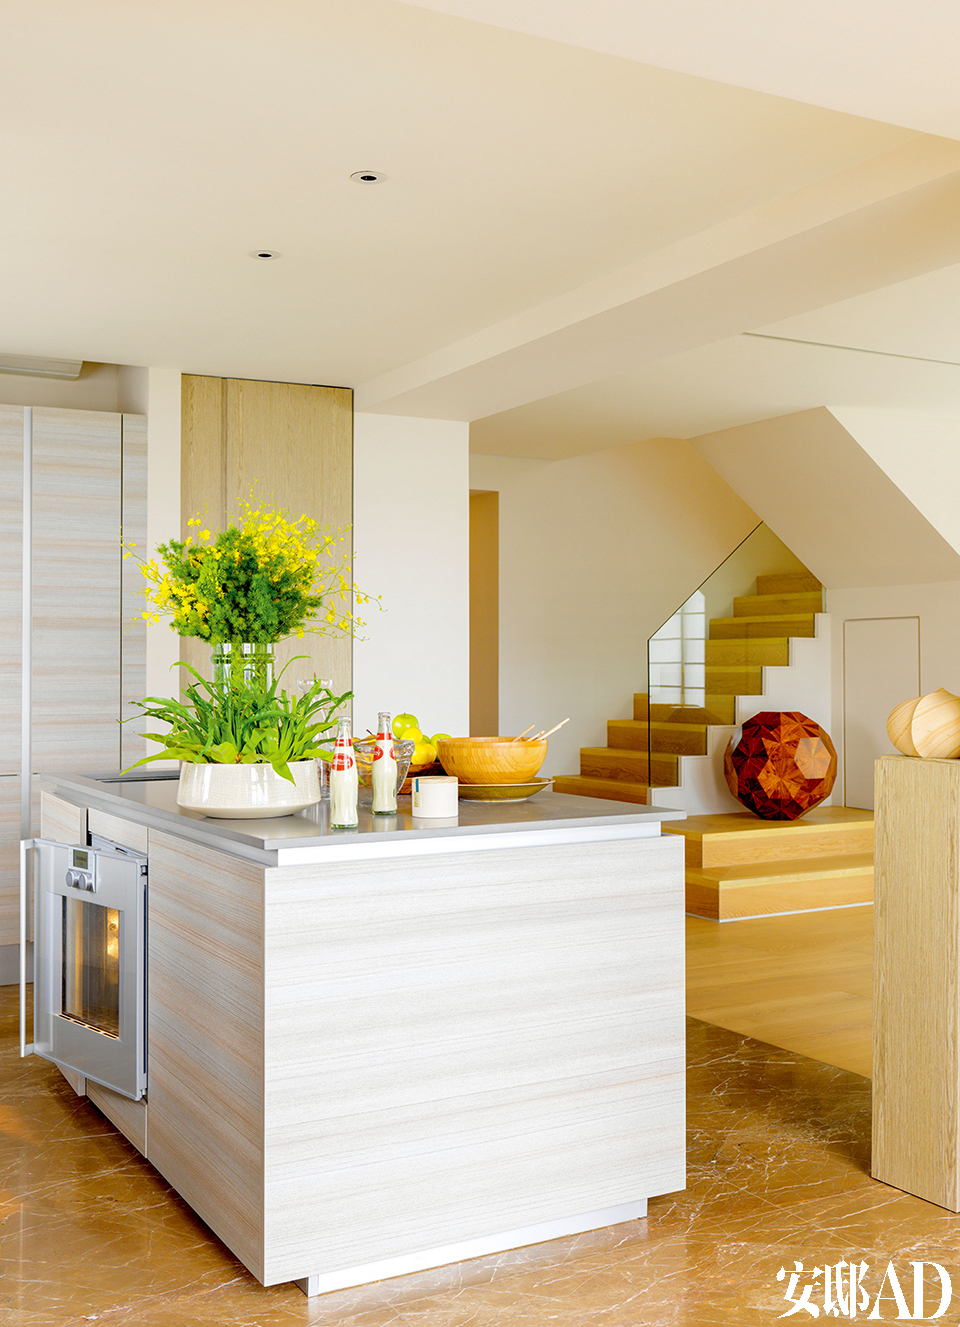 开放式的厨房是理想的选择，André可以轻松地与客人进行互动。中岛式厨房来自 Poggenpohl，使用单板层积材 （LVL）橱柜和再造石质台面。厨房的地板为大理石质地。 